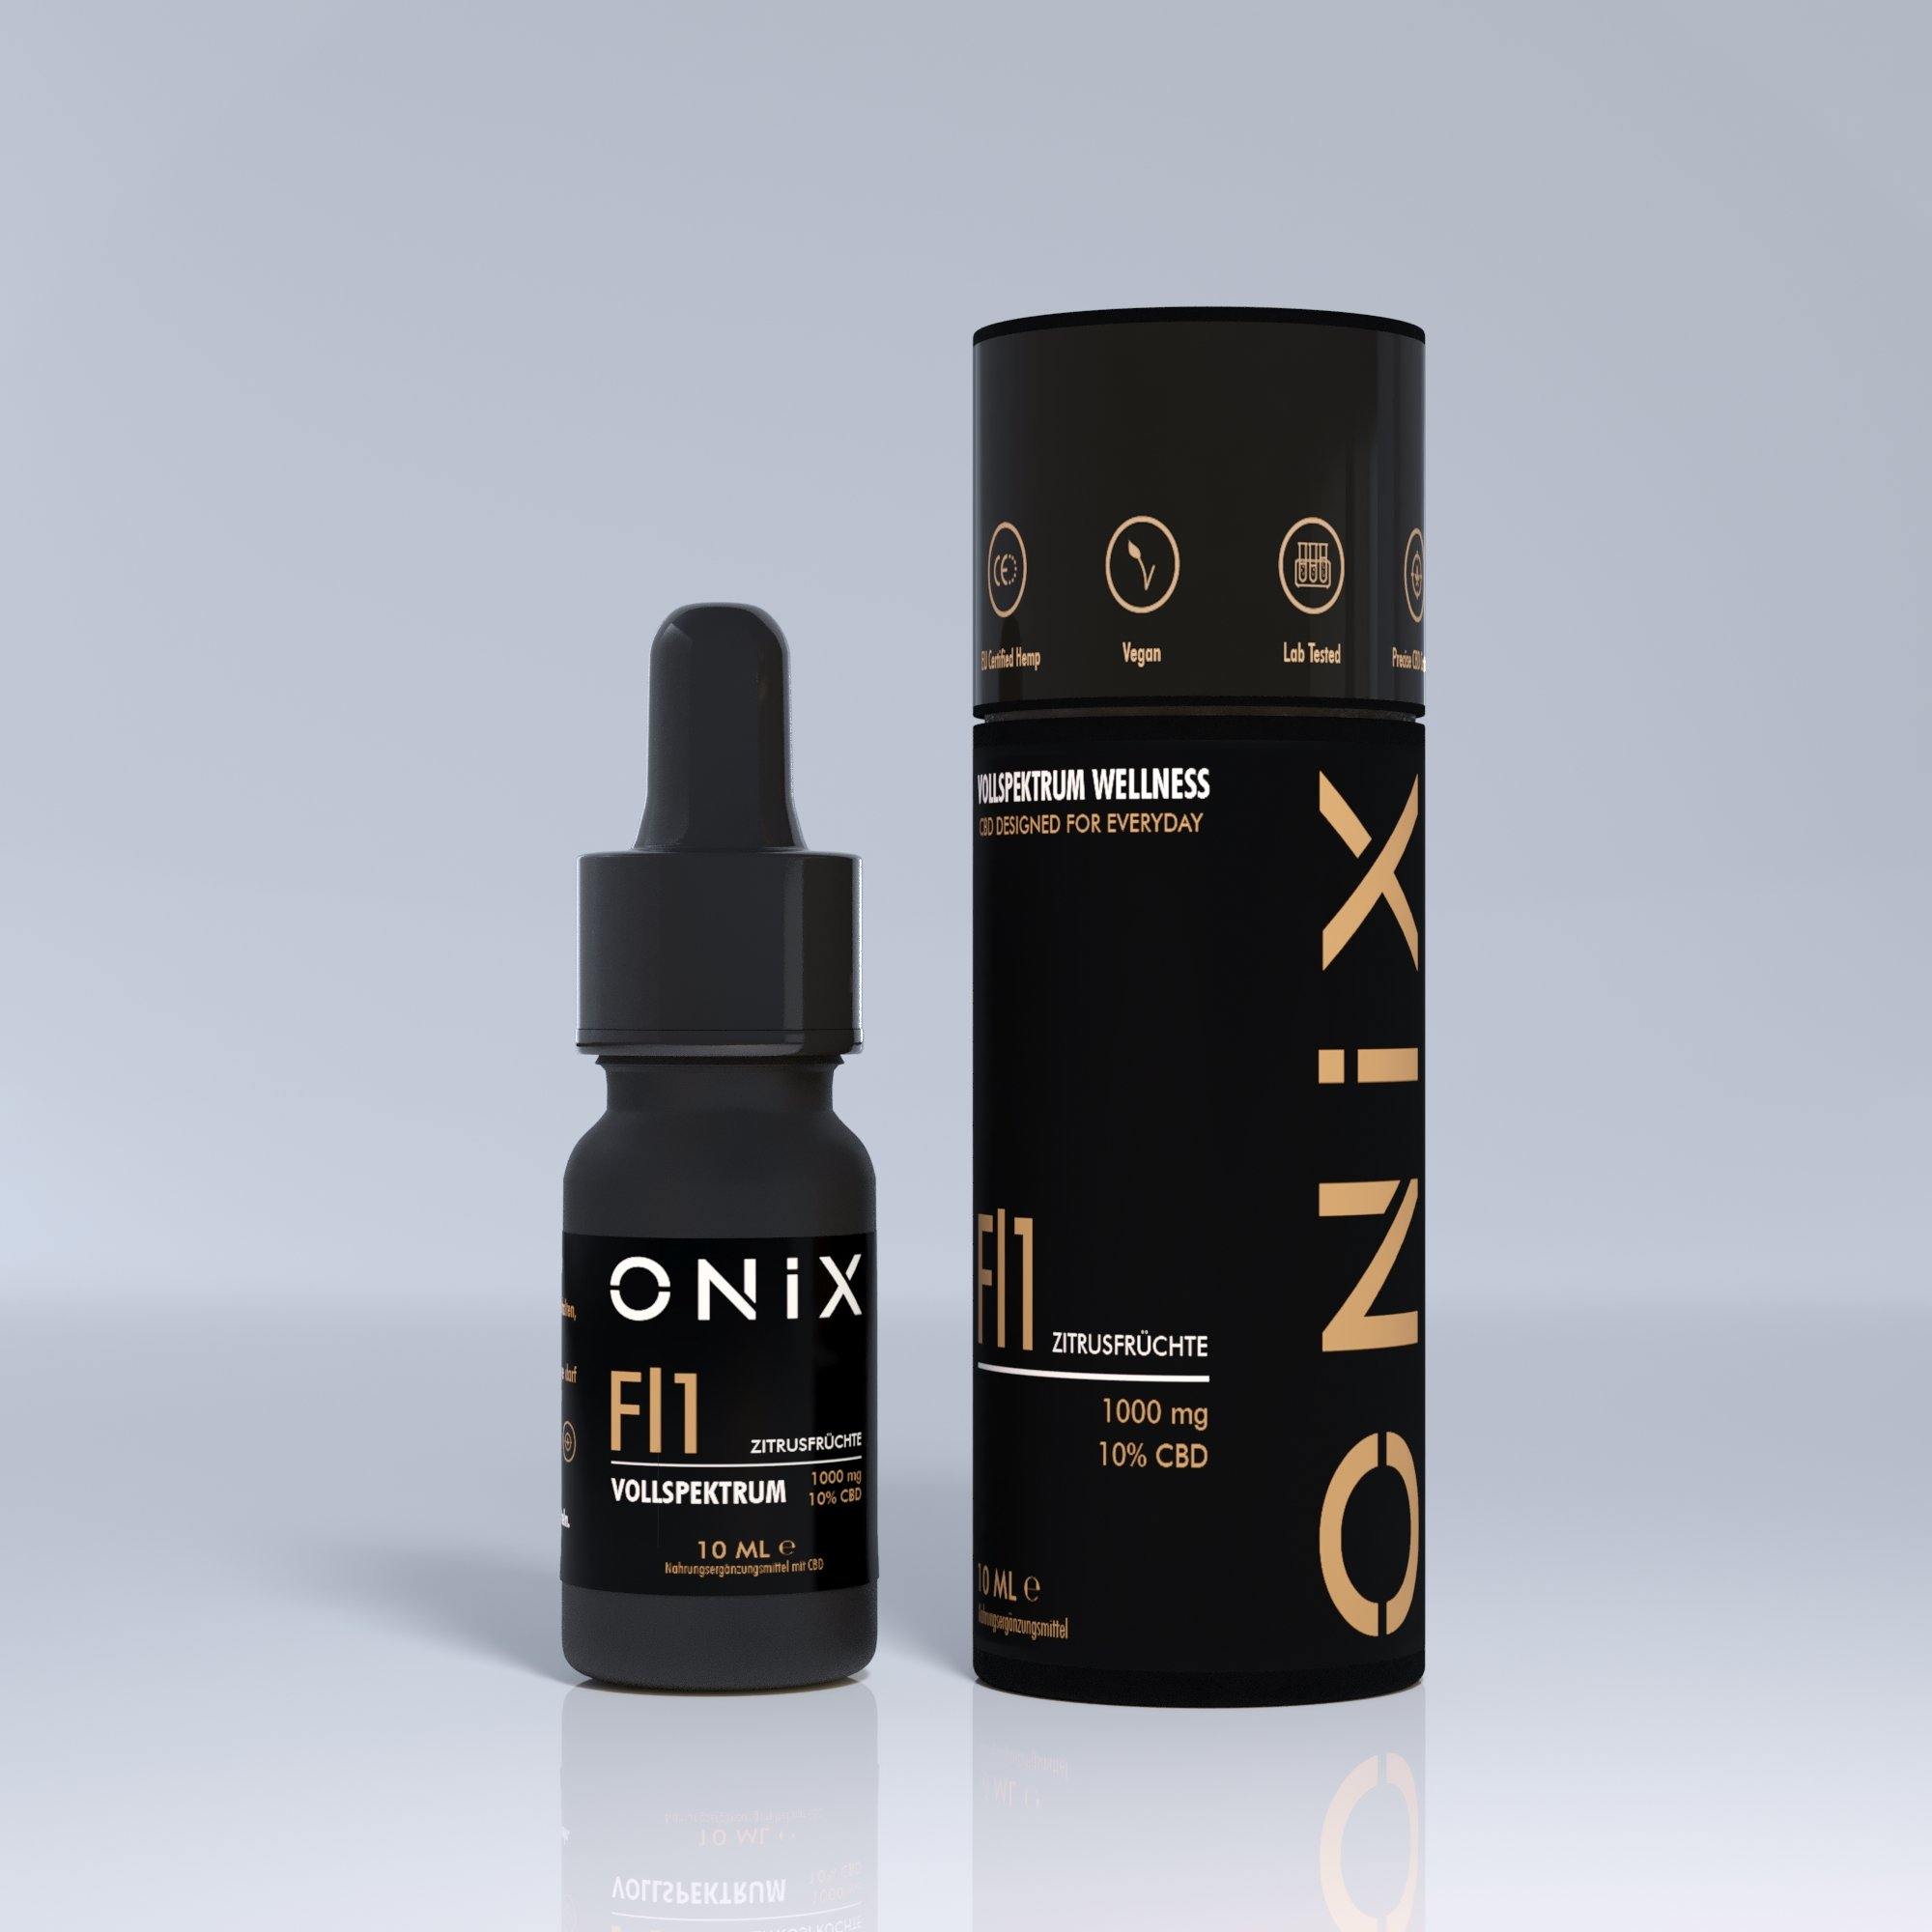 Onix FL1 CBD Oil 10% Citrus Flavour - RxMarkt